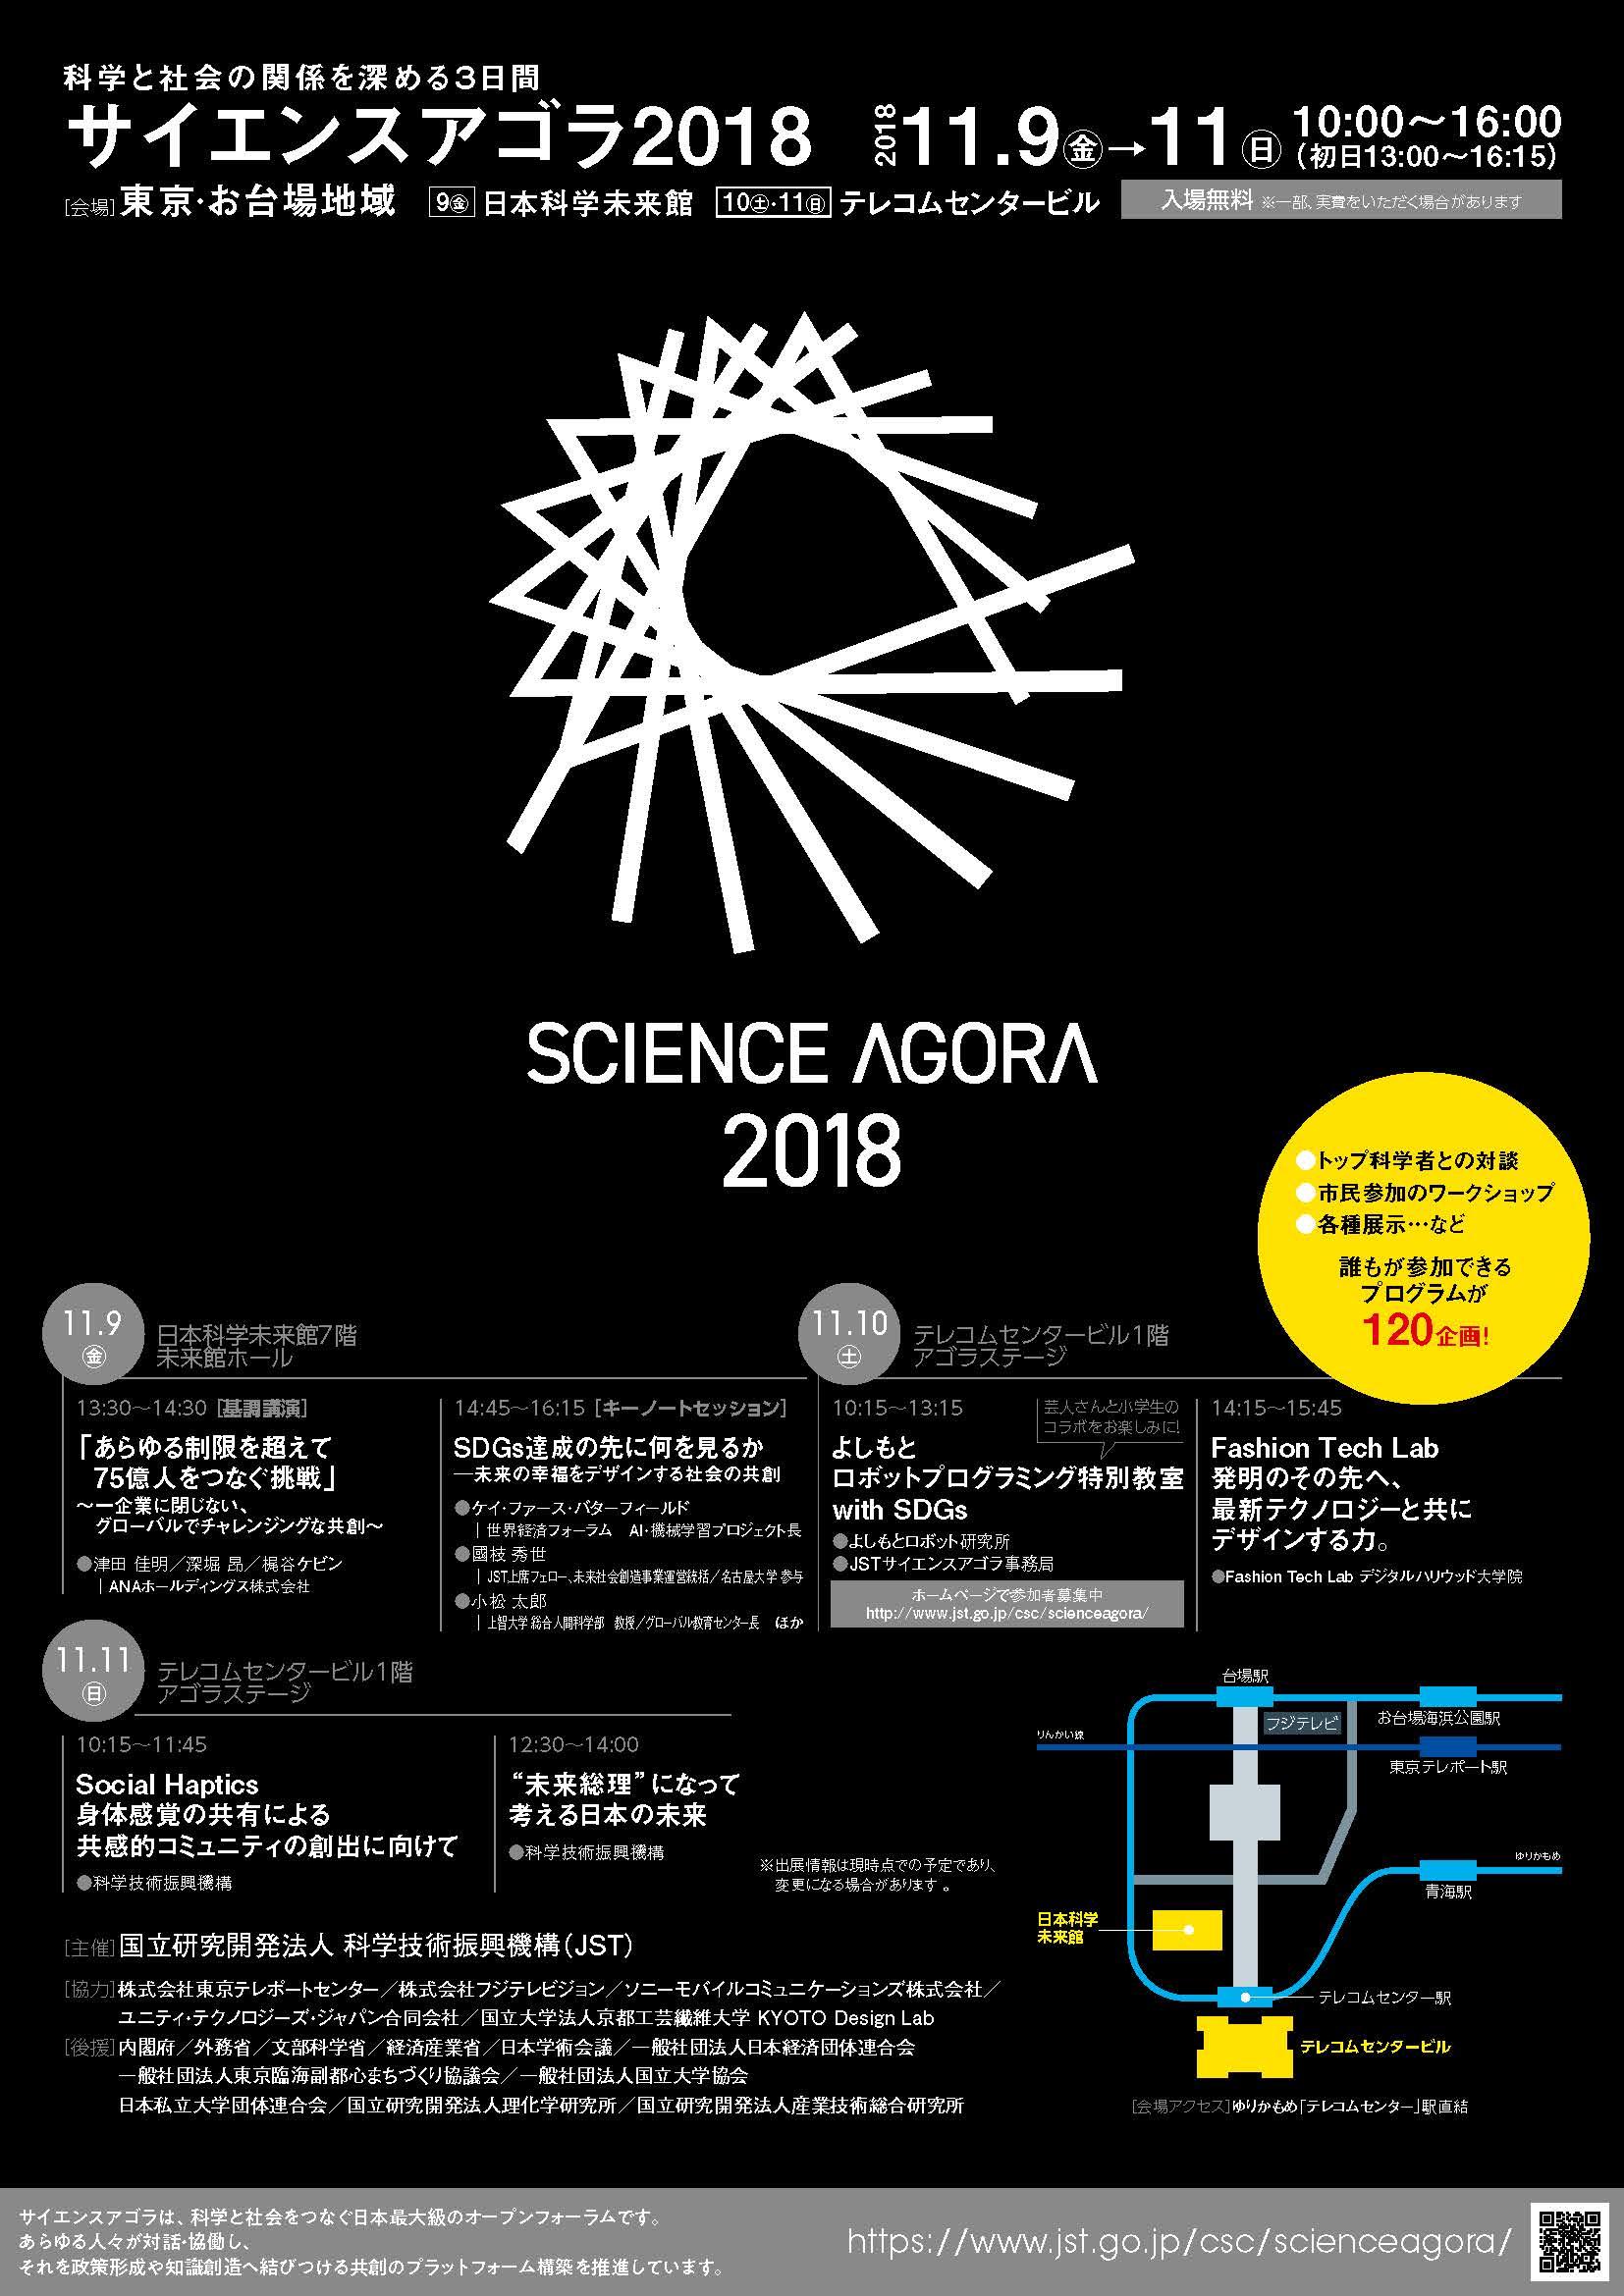 https://scirex.grips.ac.jp/events/scienceagora2018.jpg